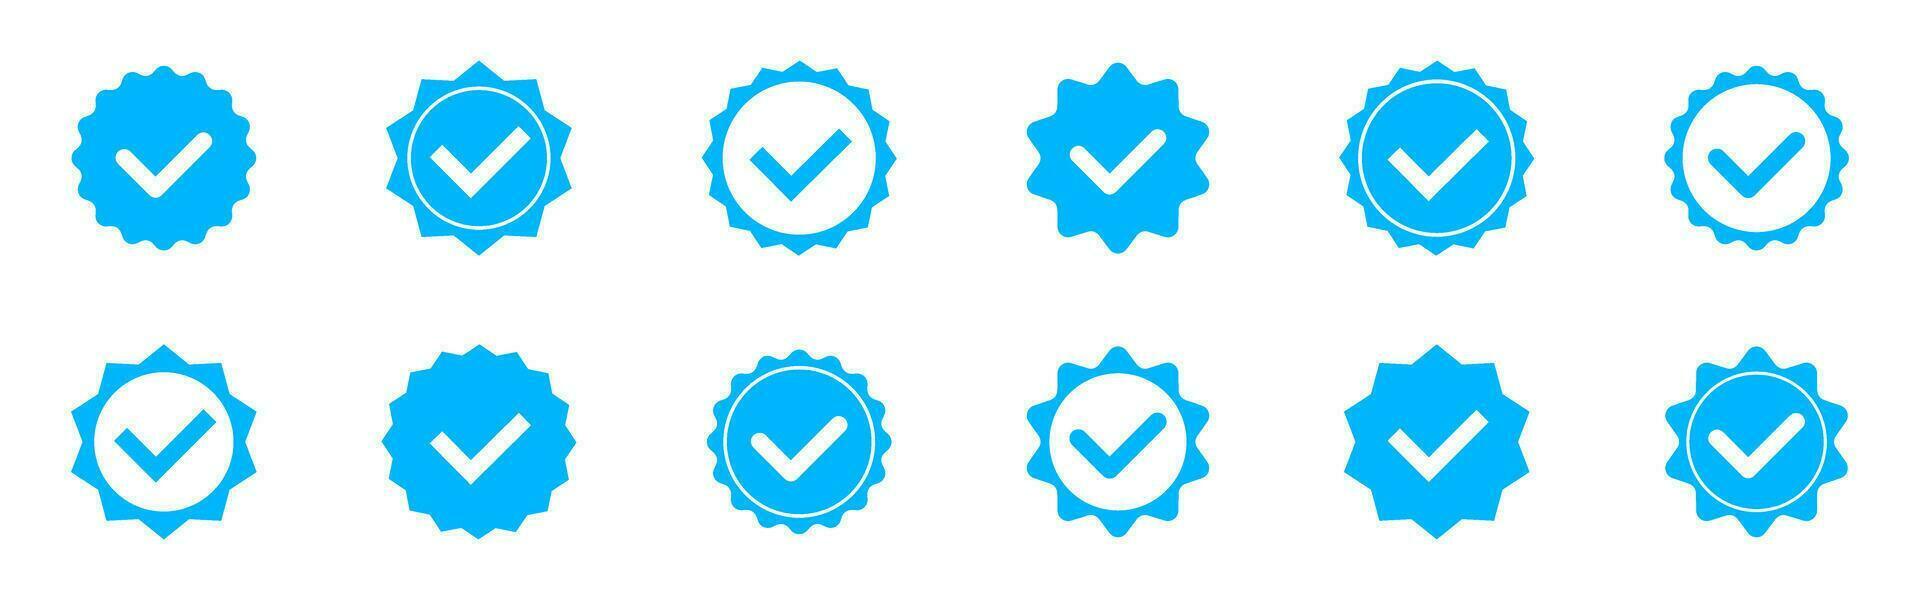 Konto Nachprüfung Symbol Sammlung. Sozial Medien Nachprüfung Symbole. verifiziert Abzeichen Profil Satz. Blau prüfen Kennzeichen Vektor Symbol